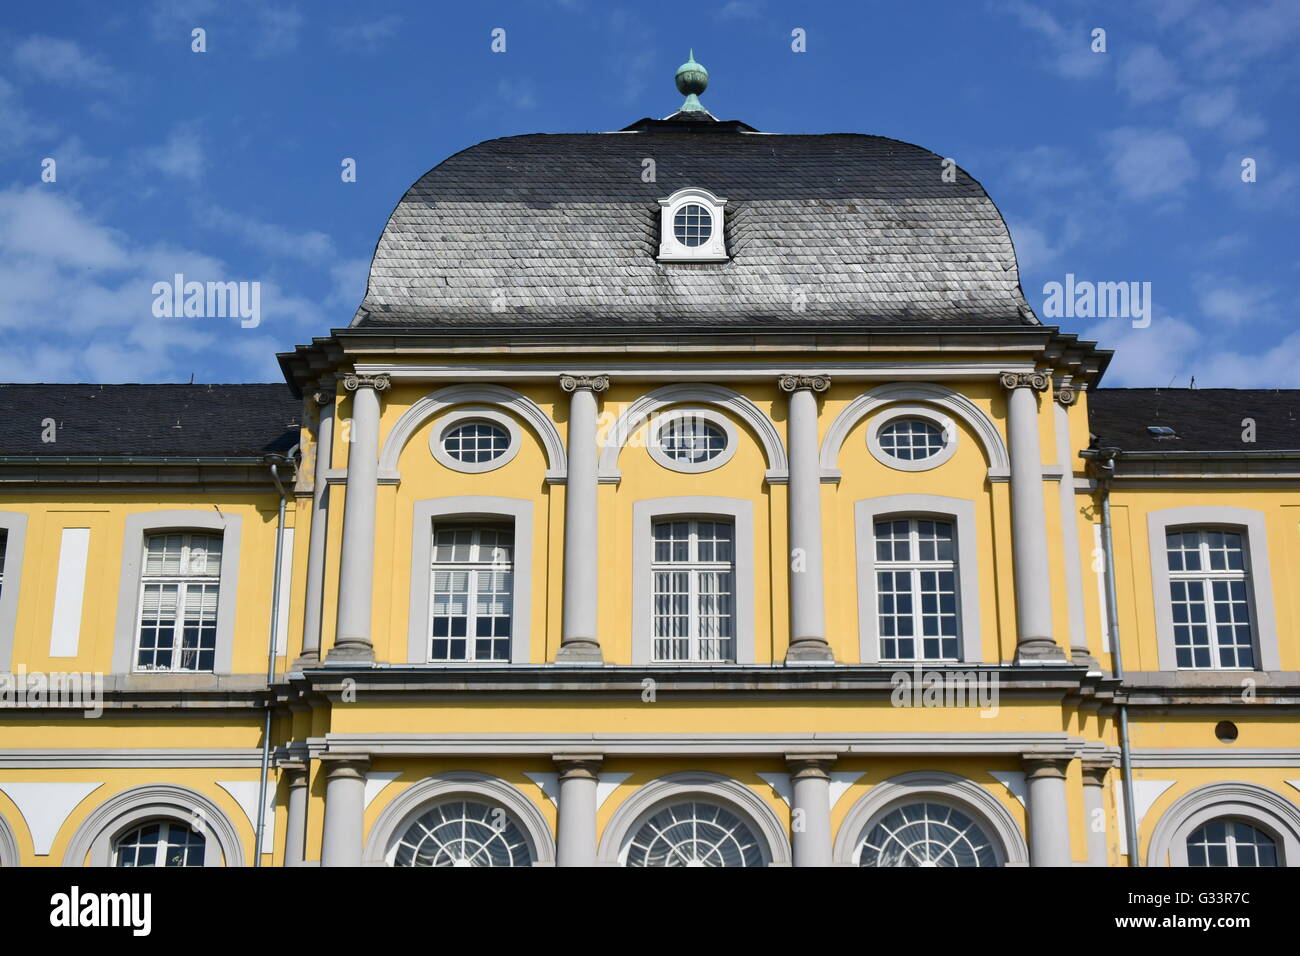 detail of the Poppelsdorfer Schloss in Bonn, Germany Stock Photo